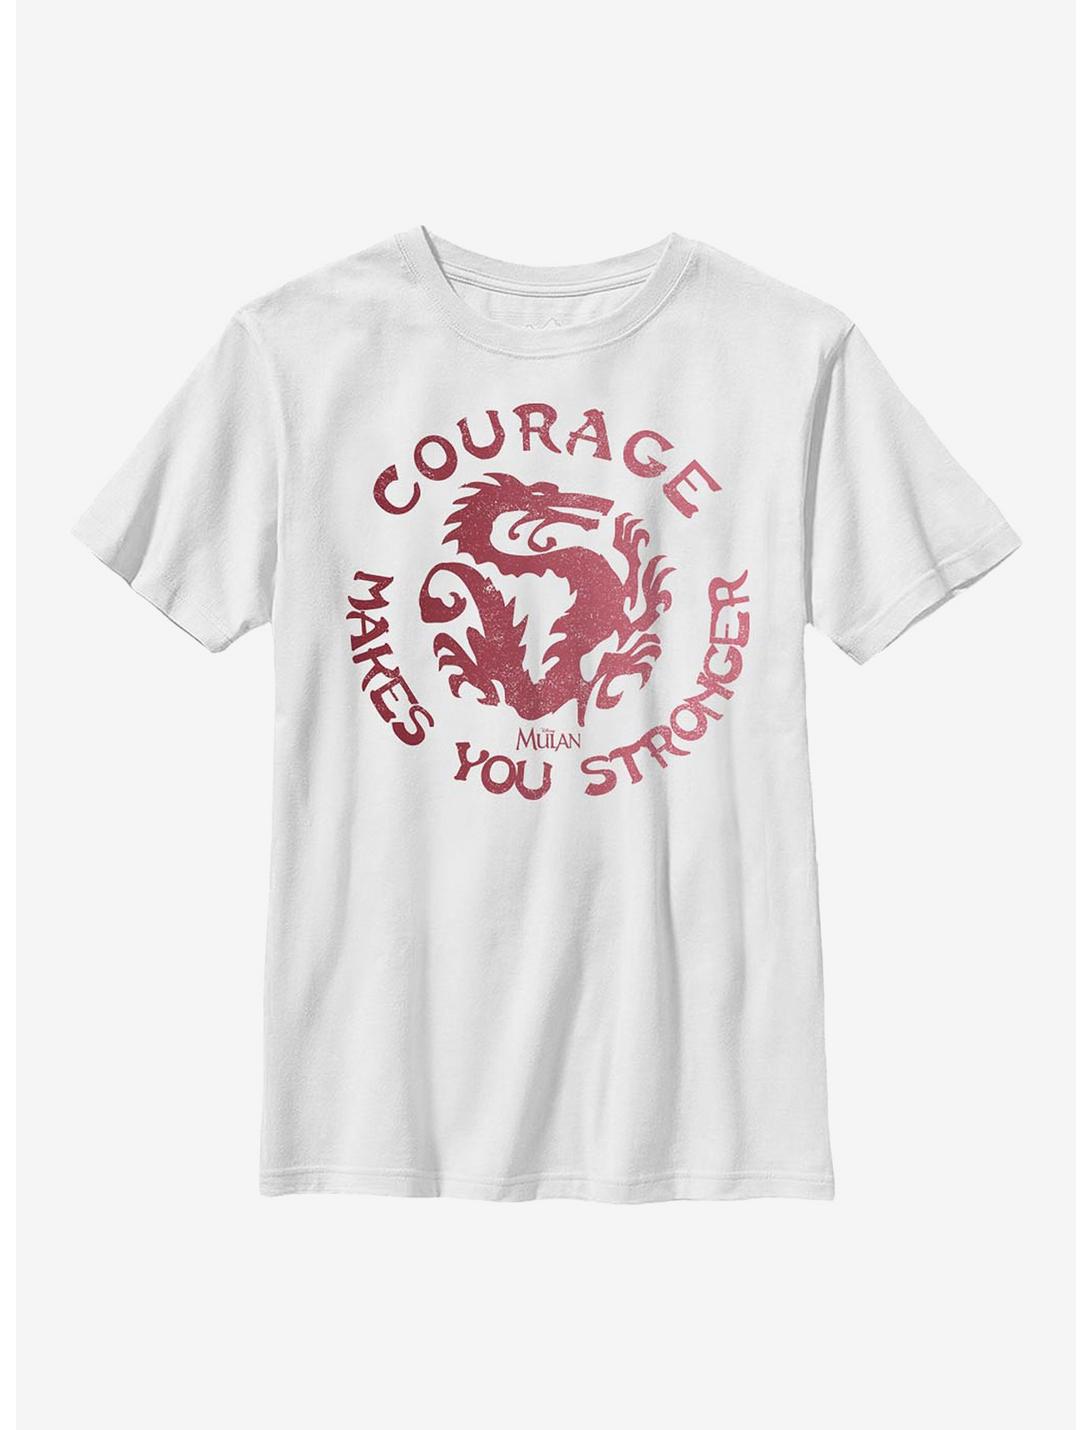 Disney Mulan Courage Youth T-Shirt, WHITE, hi-res